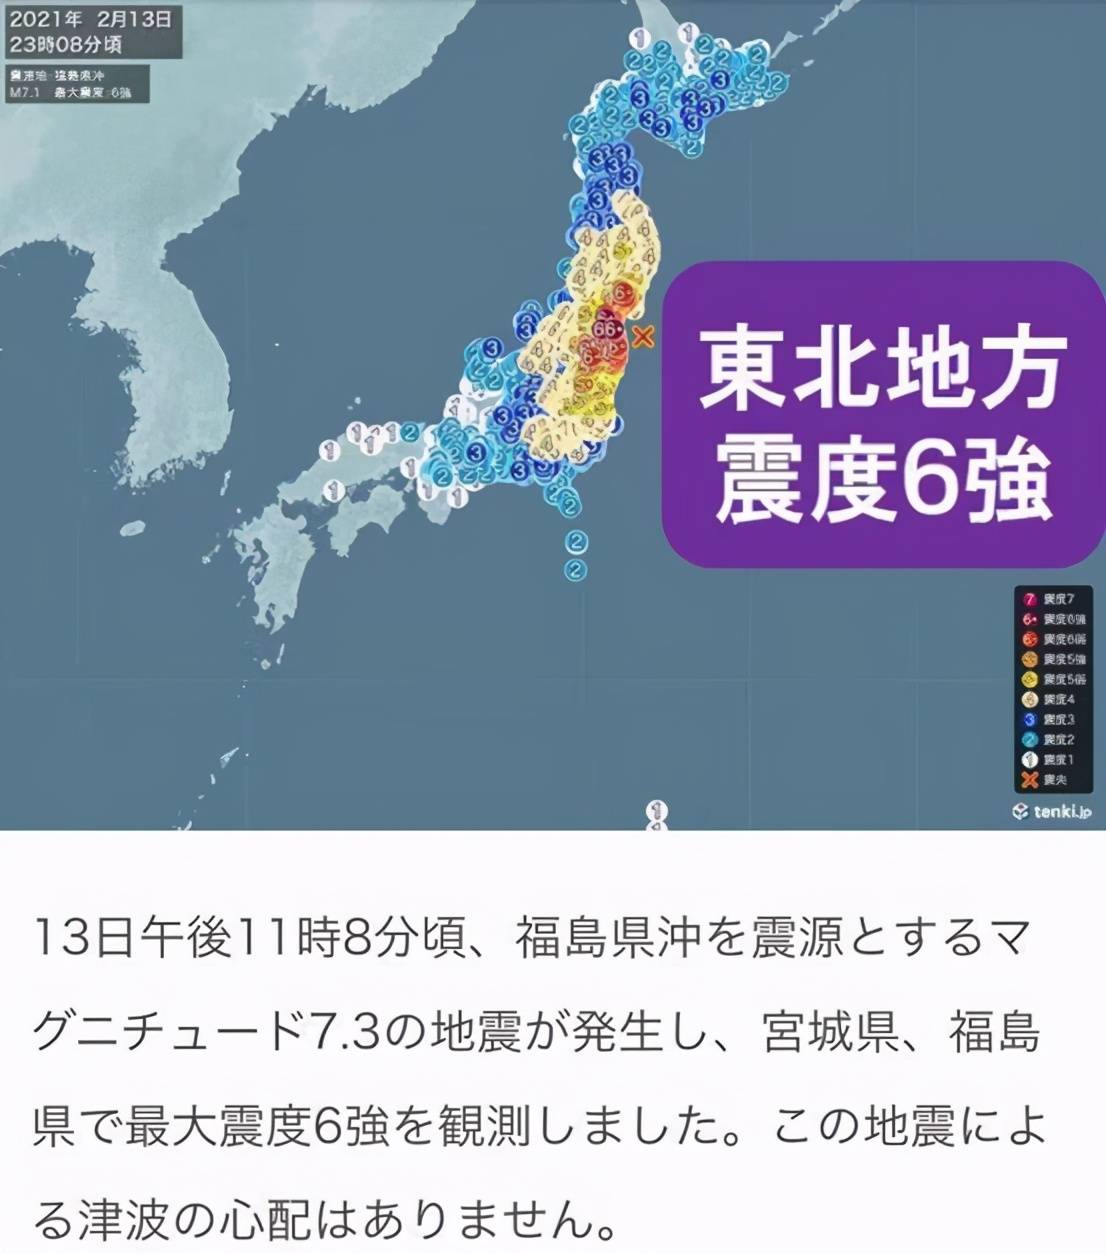 日本福岛地震修正为7.3级,可能是十年前大地震余震,近